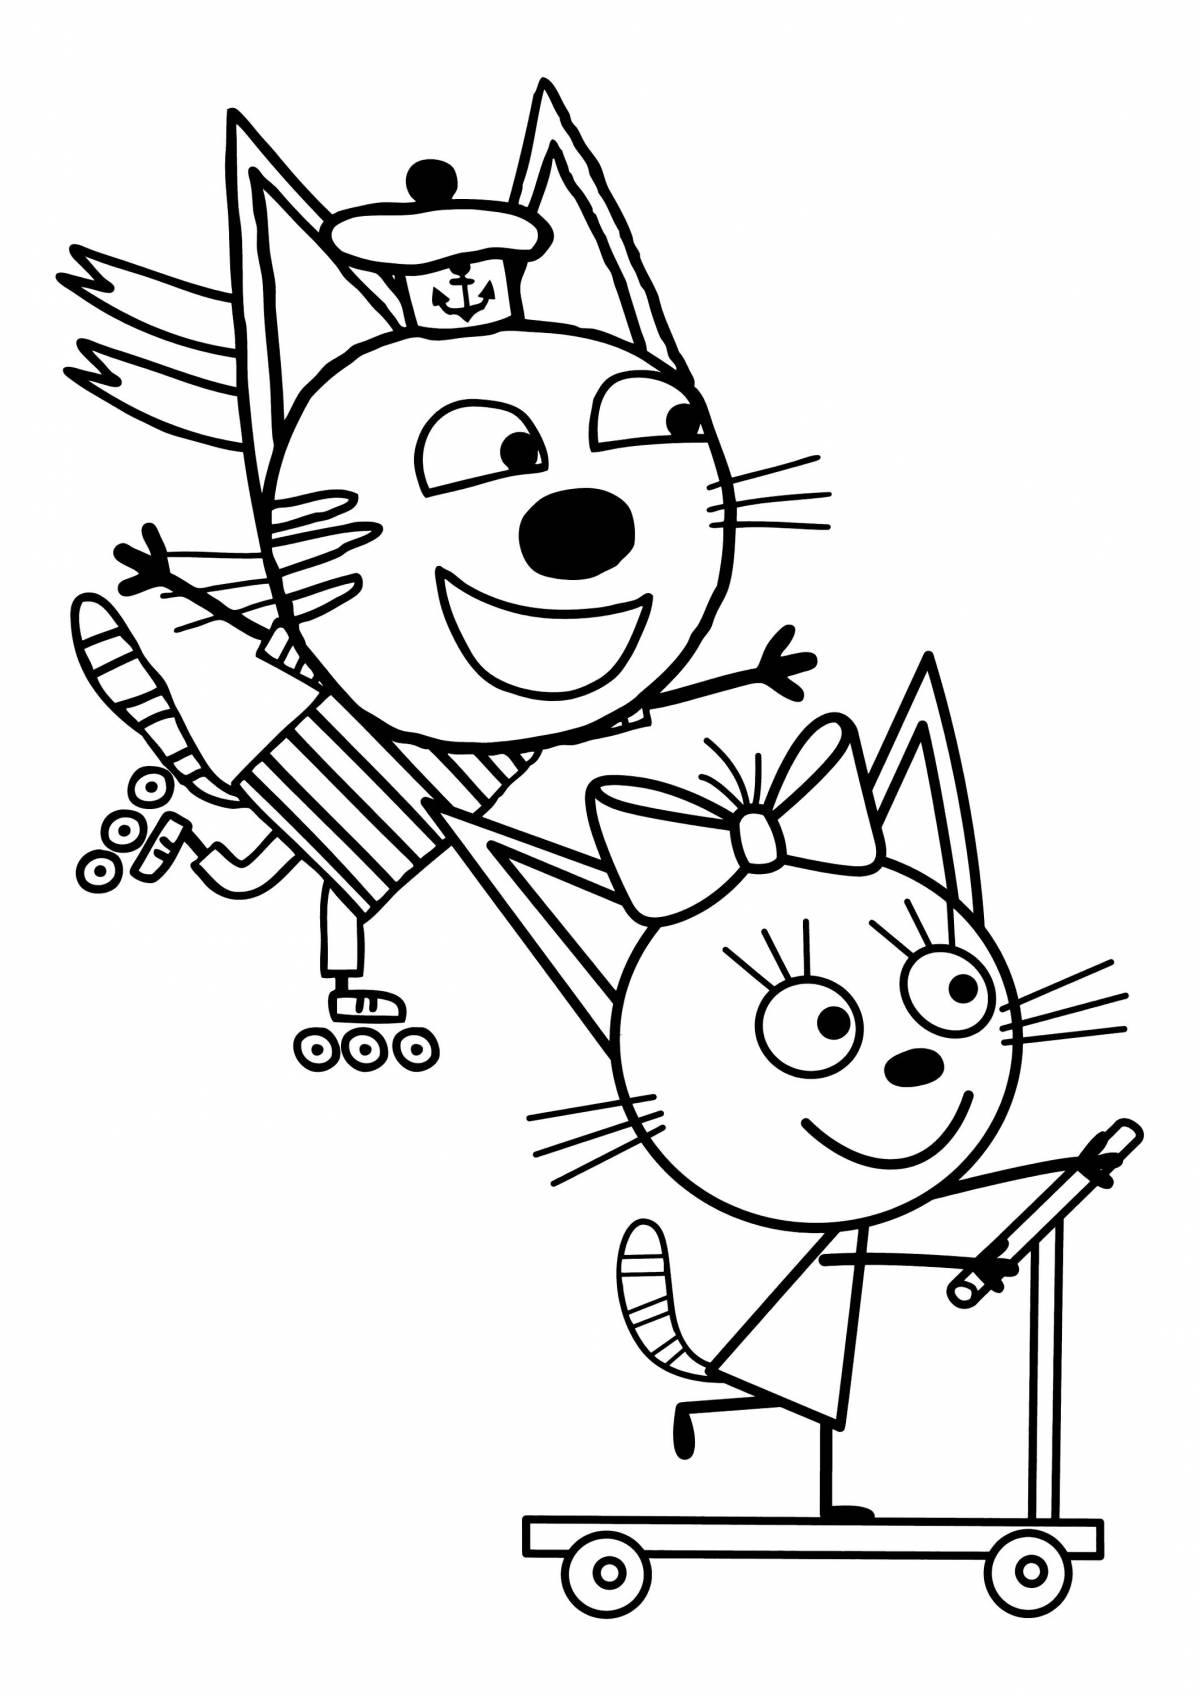 Three cats cartoon #20